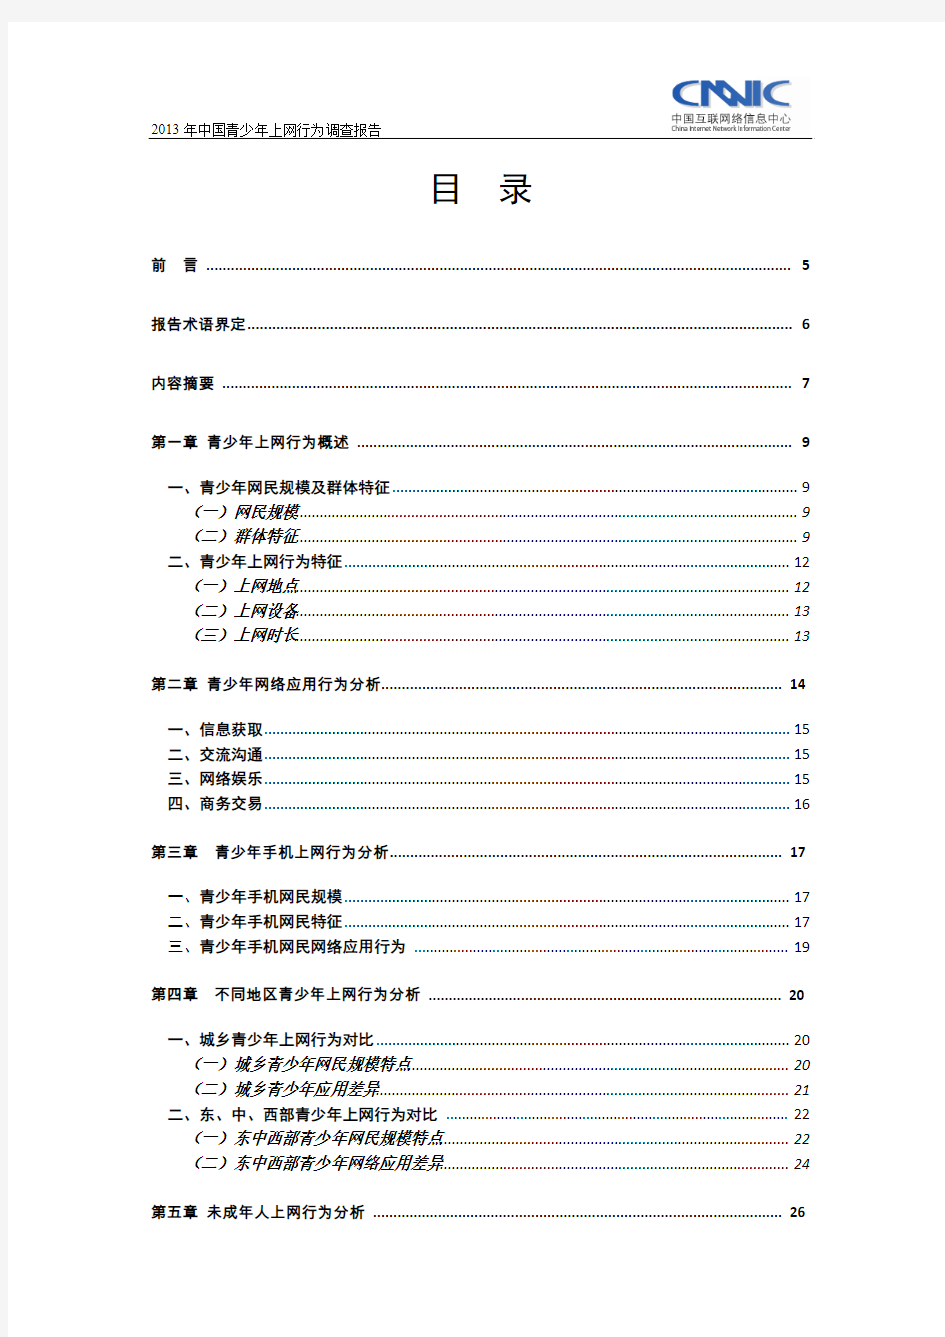 2013年中国青少年上网行为调查报告